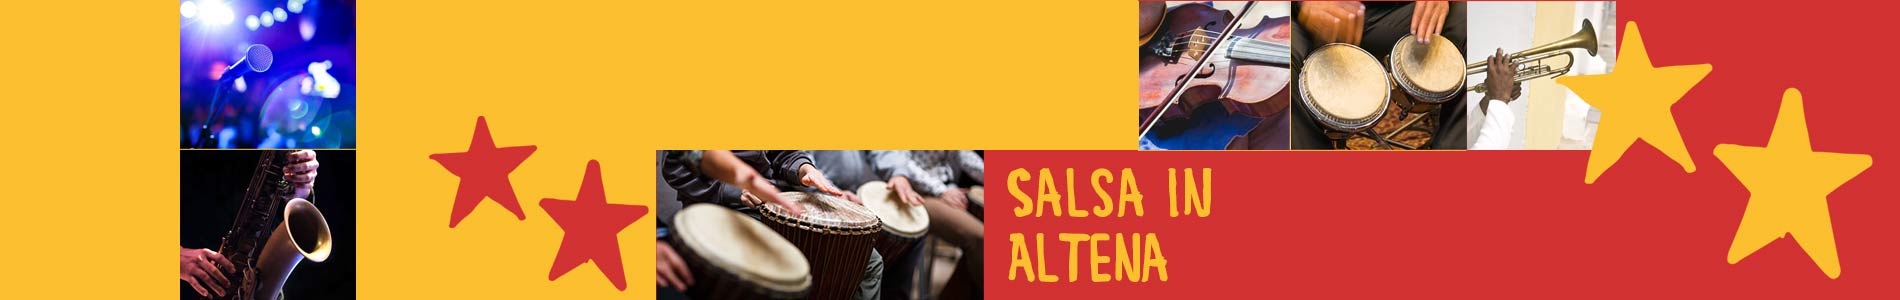 Salsa in Altena – Salsa lernen und tanzen, Tanzkurse, Partys, Veranstaltungen